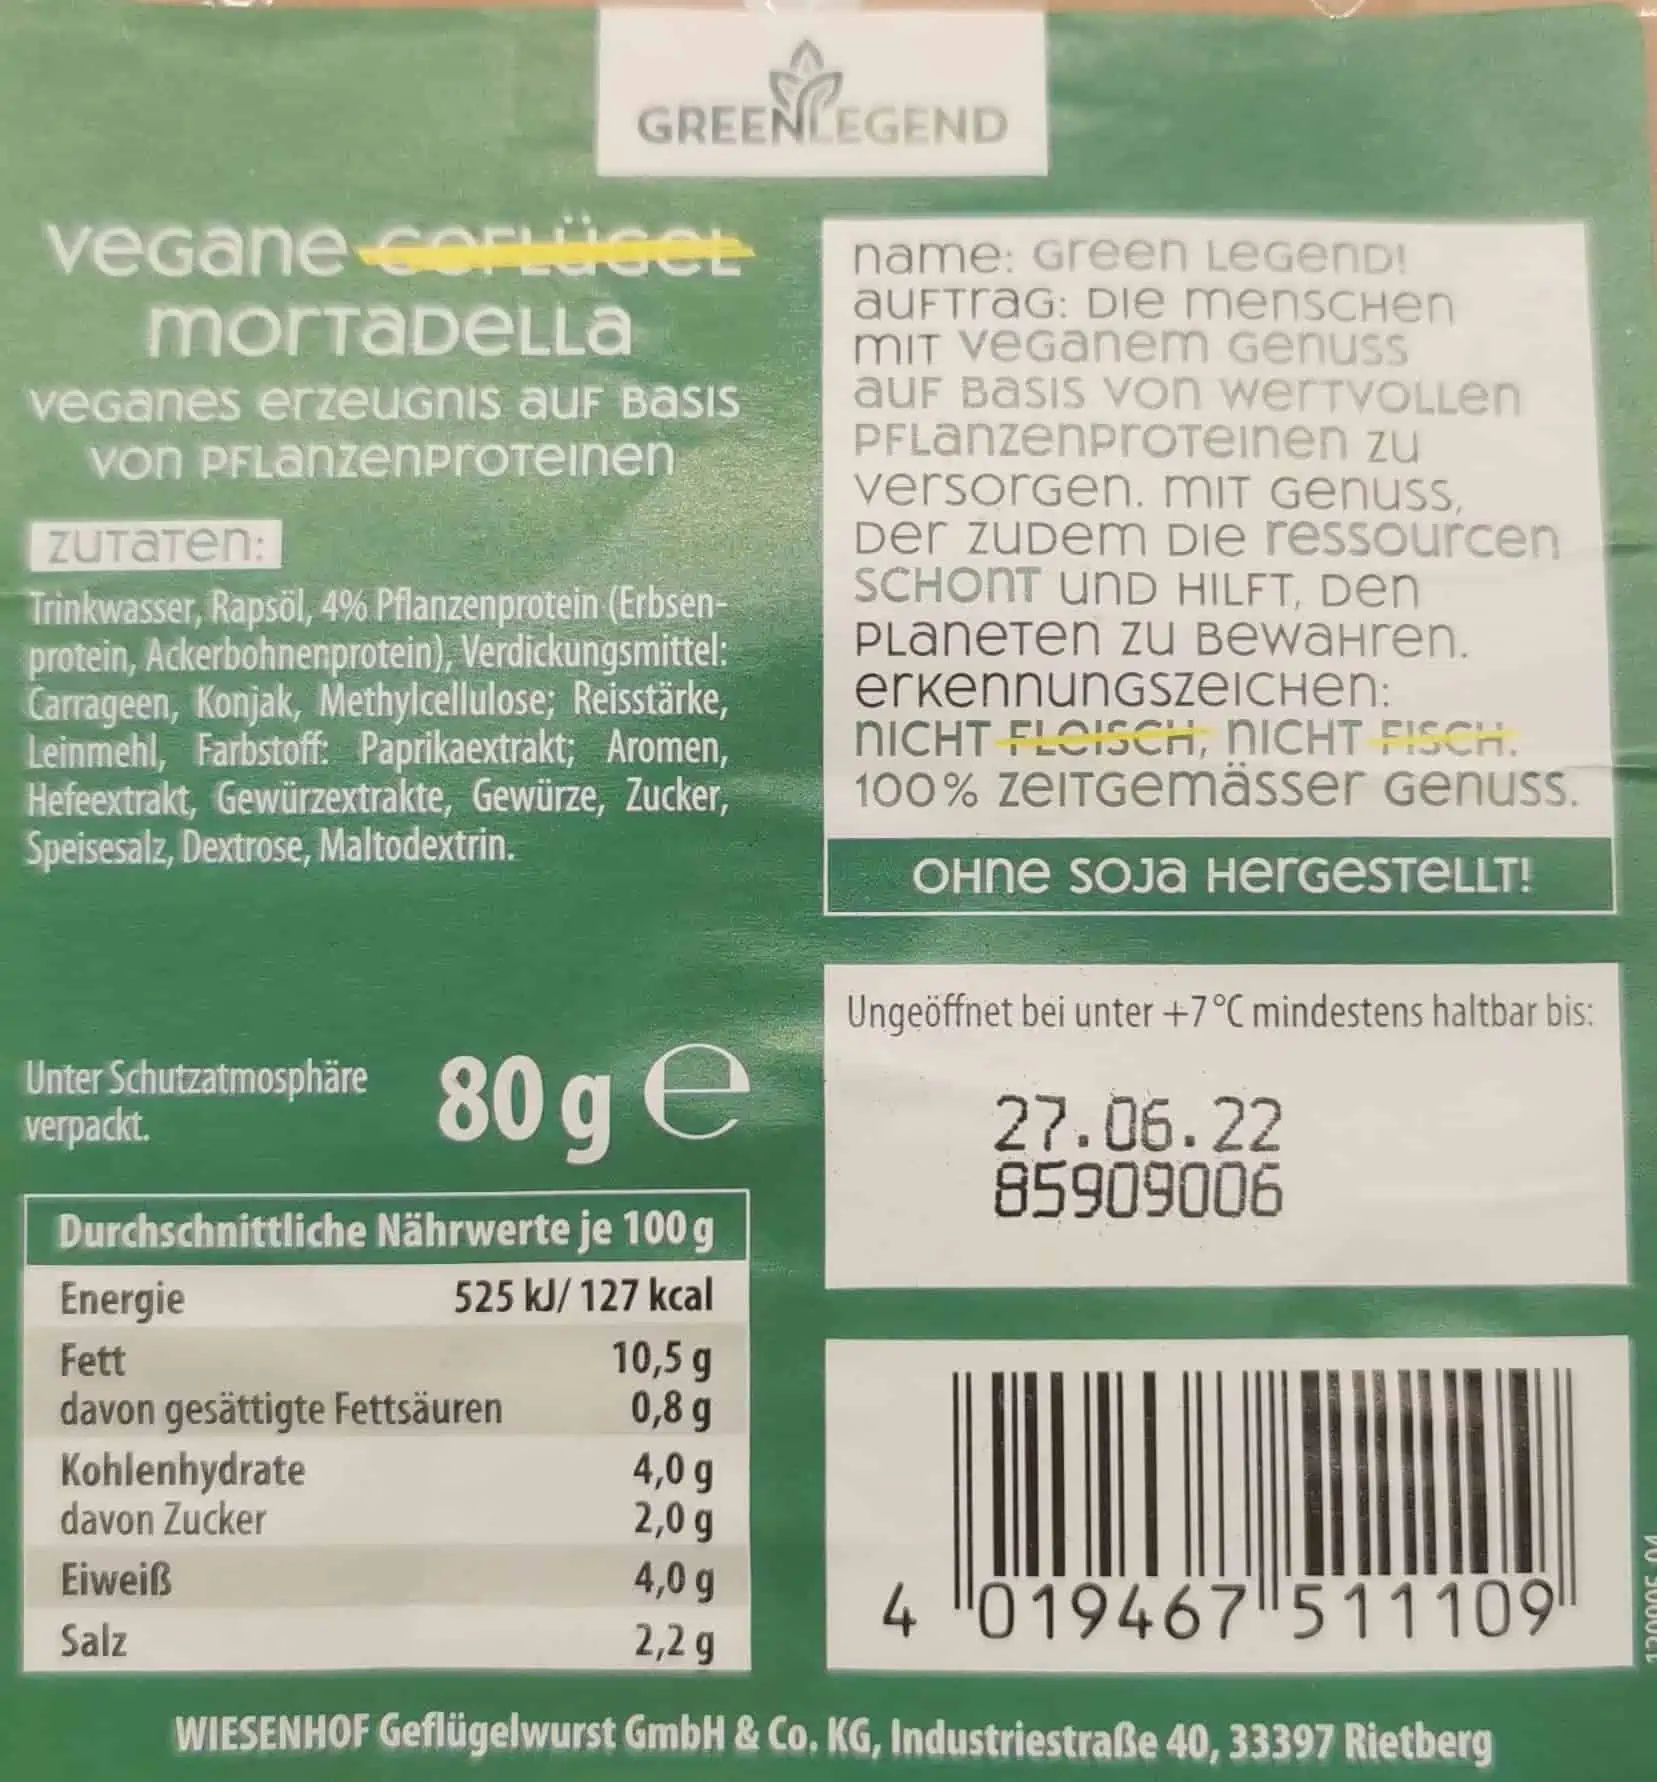 Green Legend - Vegane Mortadella Inhaltsstoffe und Nährwerte